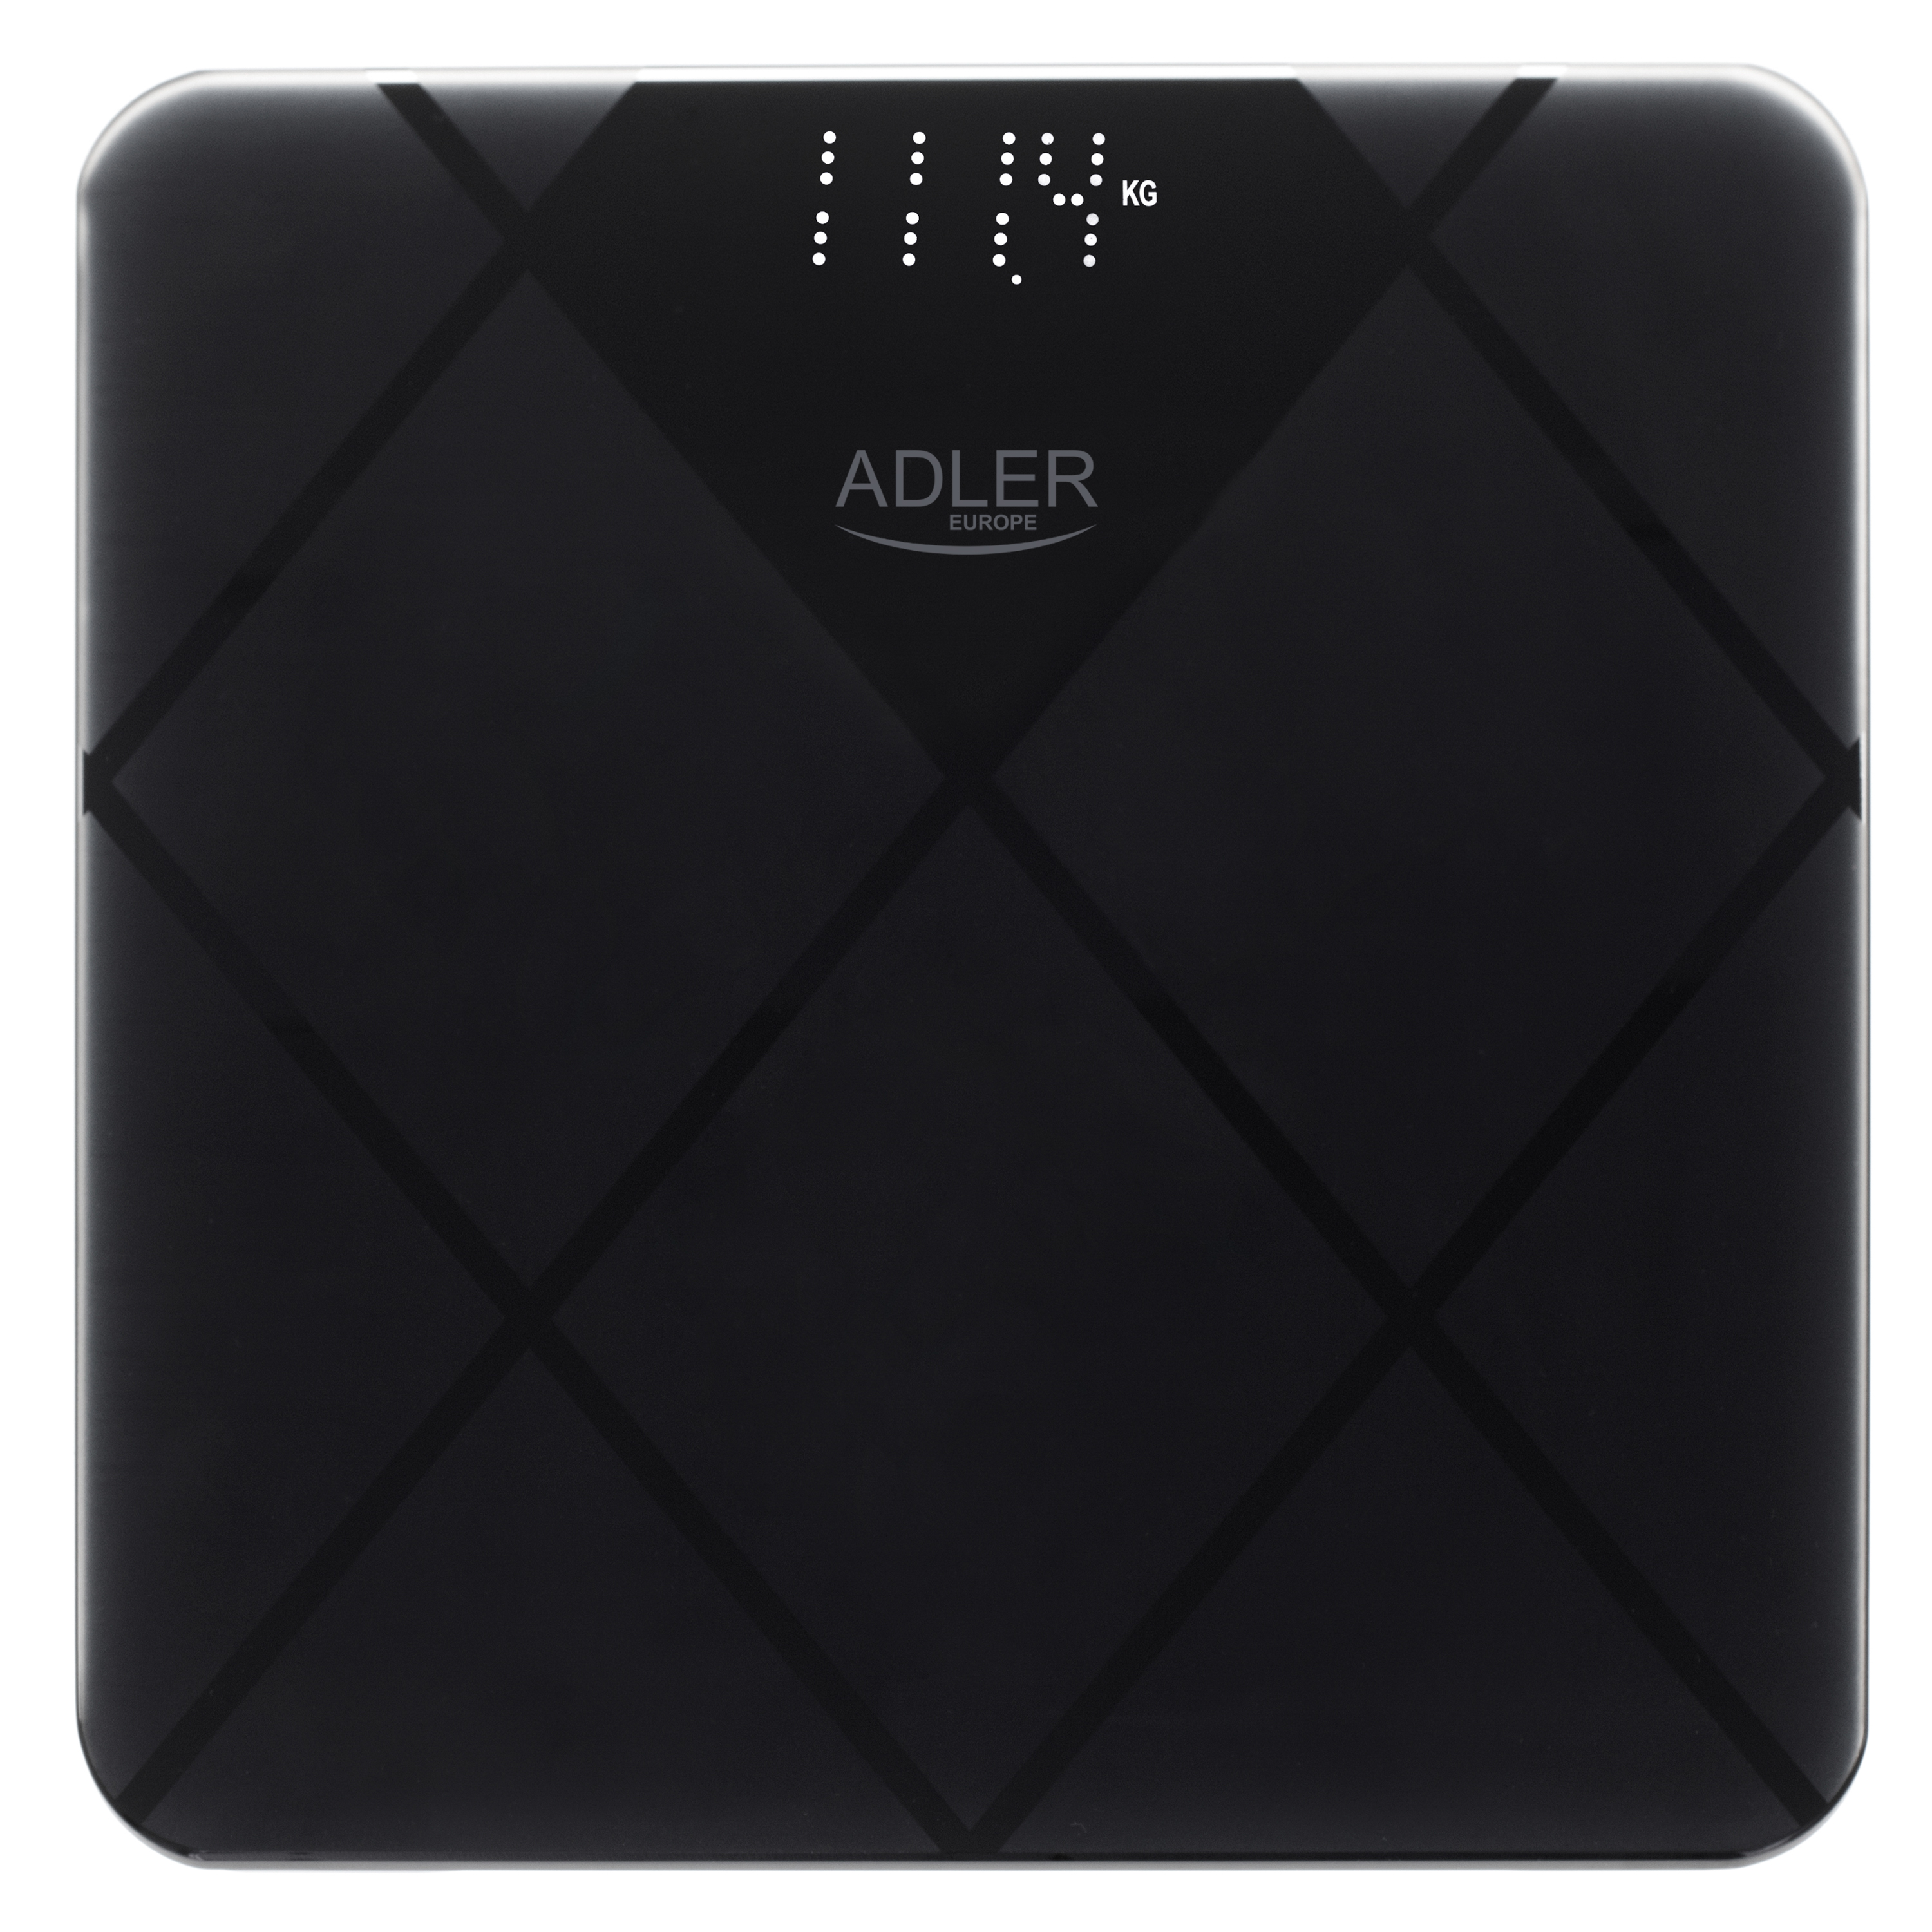 Adler AD8169 - digitale LED Personenwaage bis 180kg - Waage